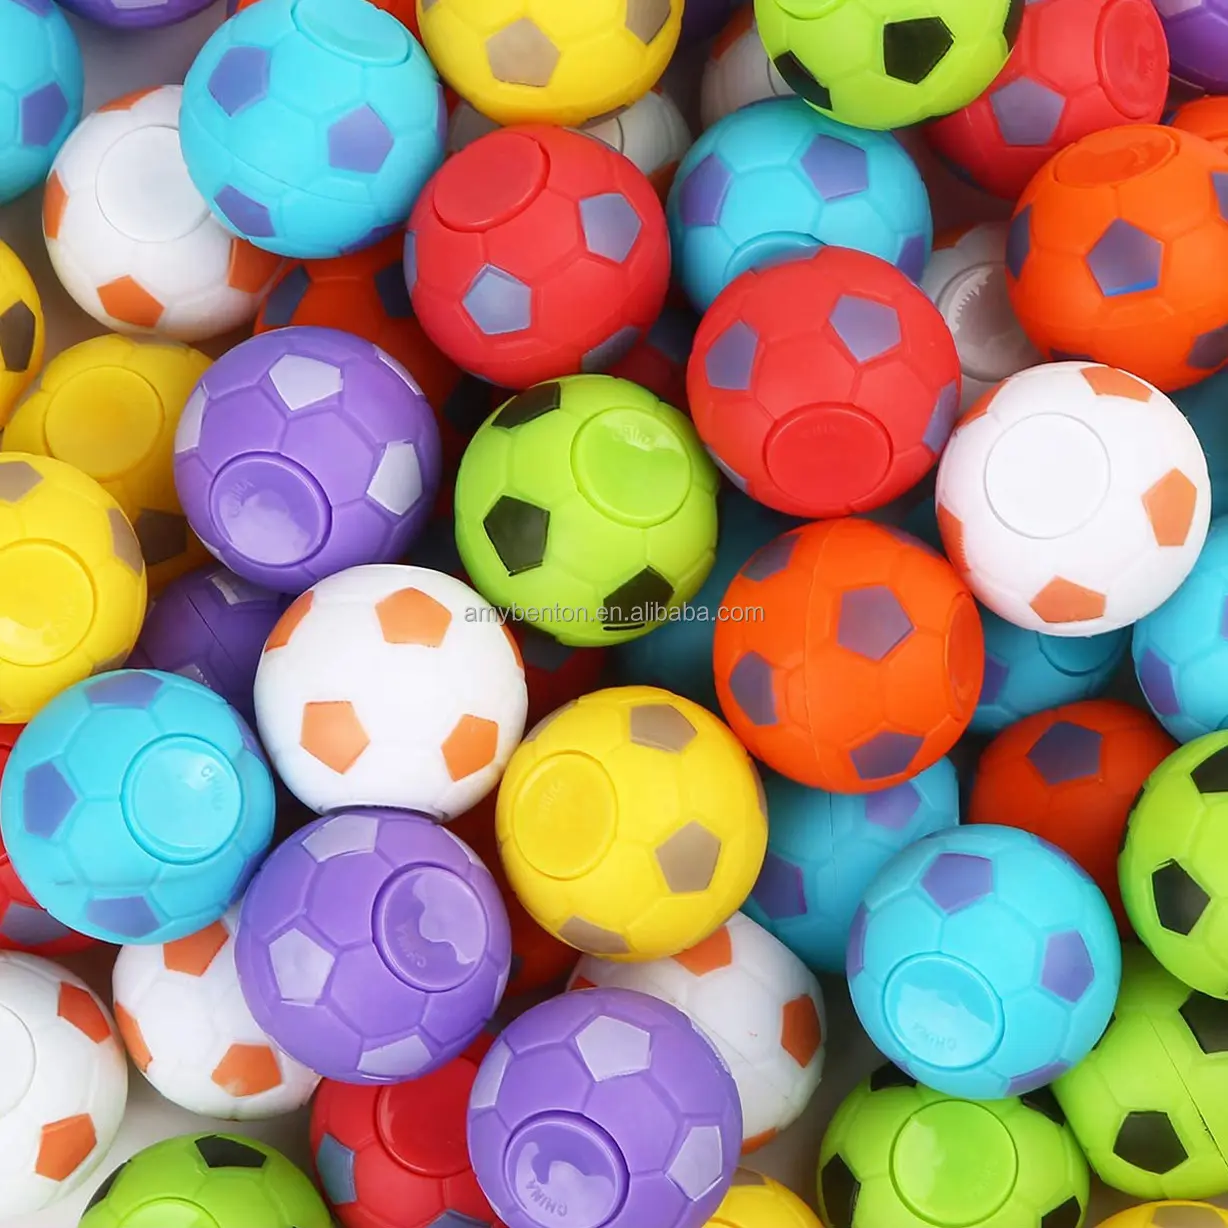 Balle de football Fidget Spinners, balles anti-Stress, jouets Spinning, petit Gadget sensoriel, Spinner à main, jouet de mise au point pour enfants et adultes